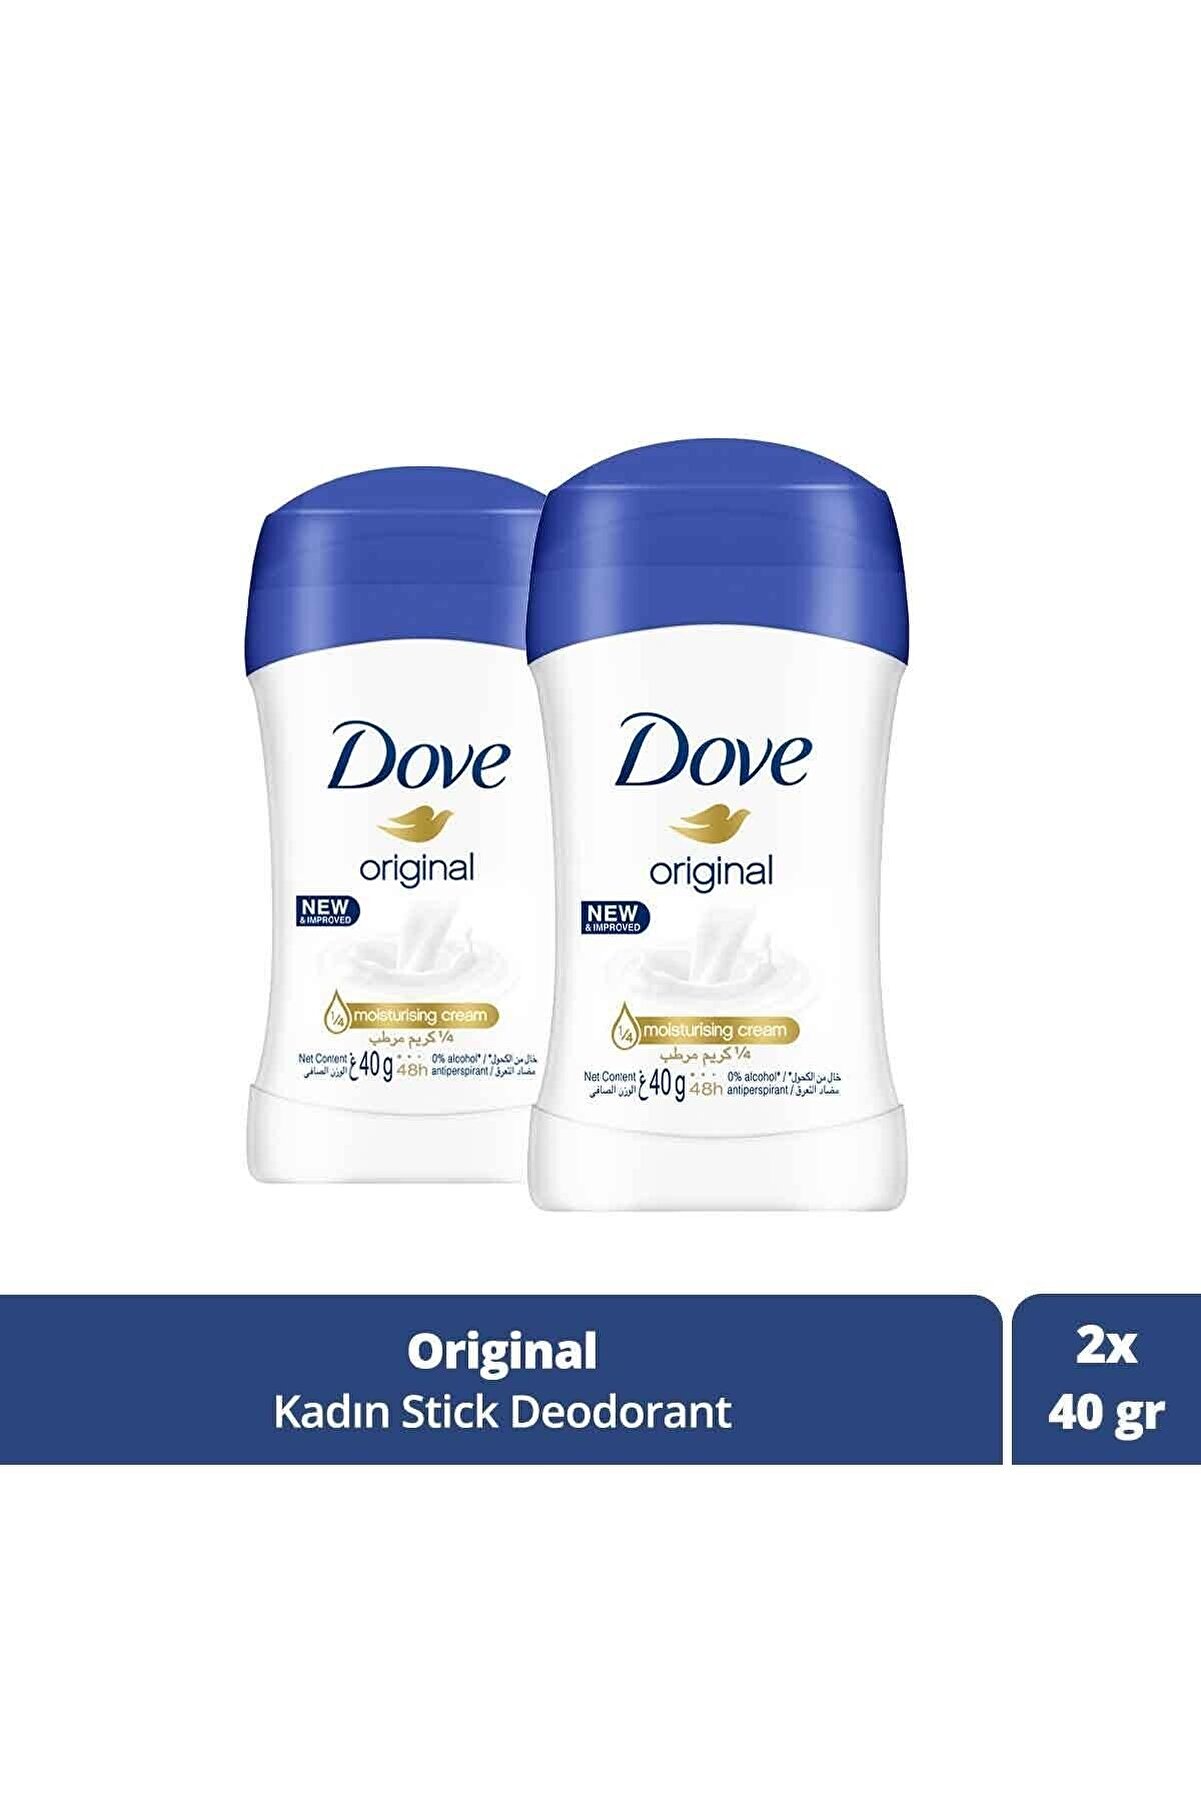 Dove Kadın Stick Deodorant Original Nemlendirici Krem Etkili 40 g X 2 Adet